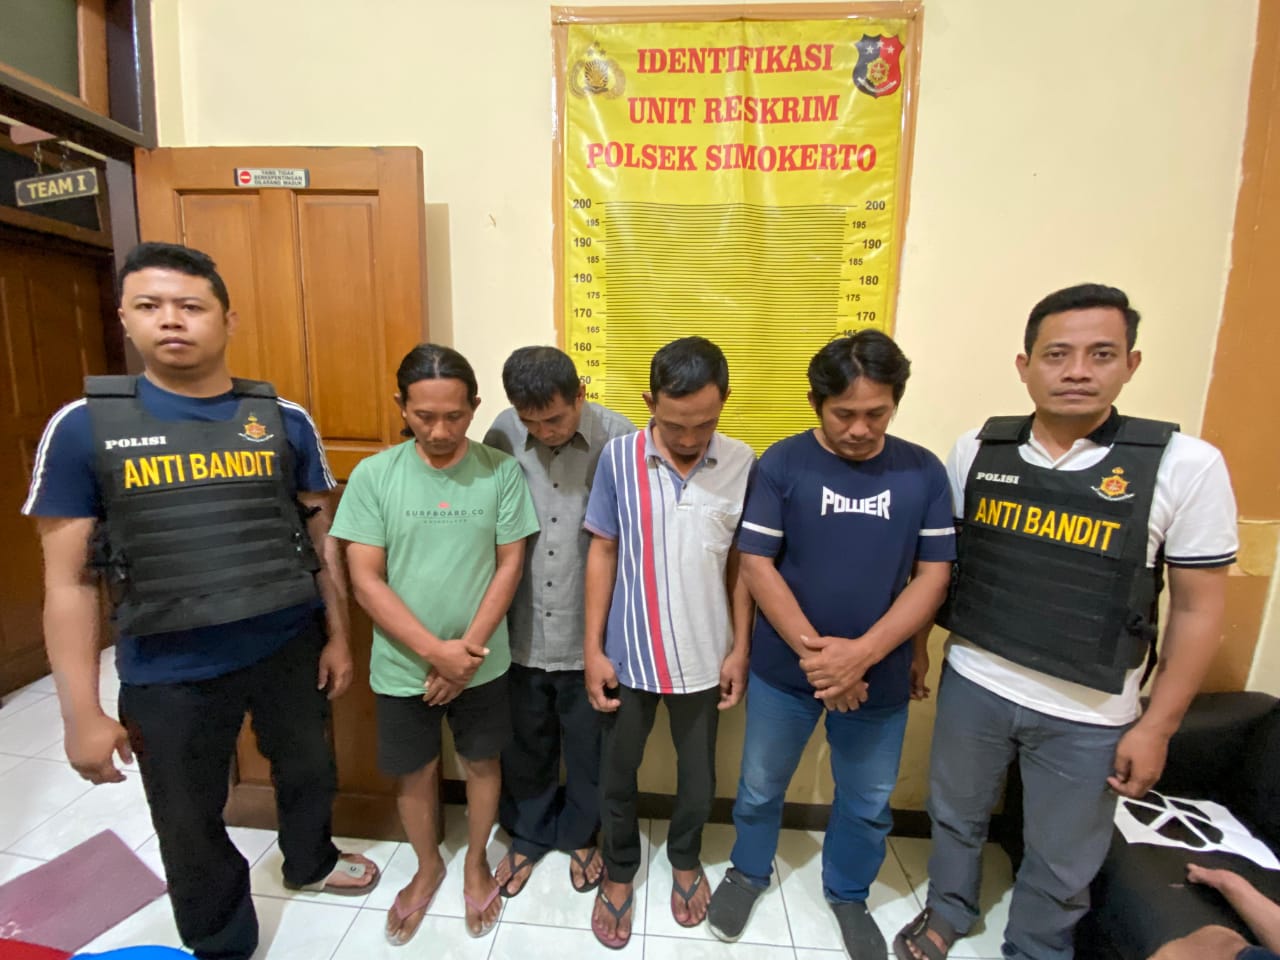 Anti Bandit Polsek Simokerto Ciduk Empat Pemain Judi Online saat Ngopi di Warkop